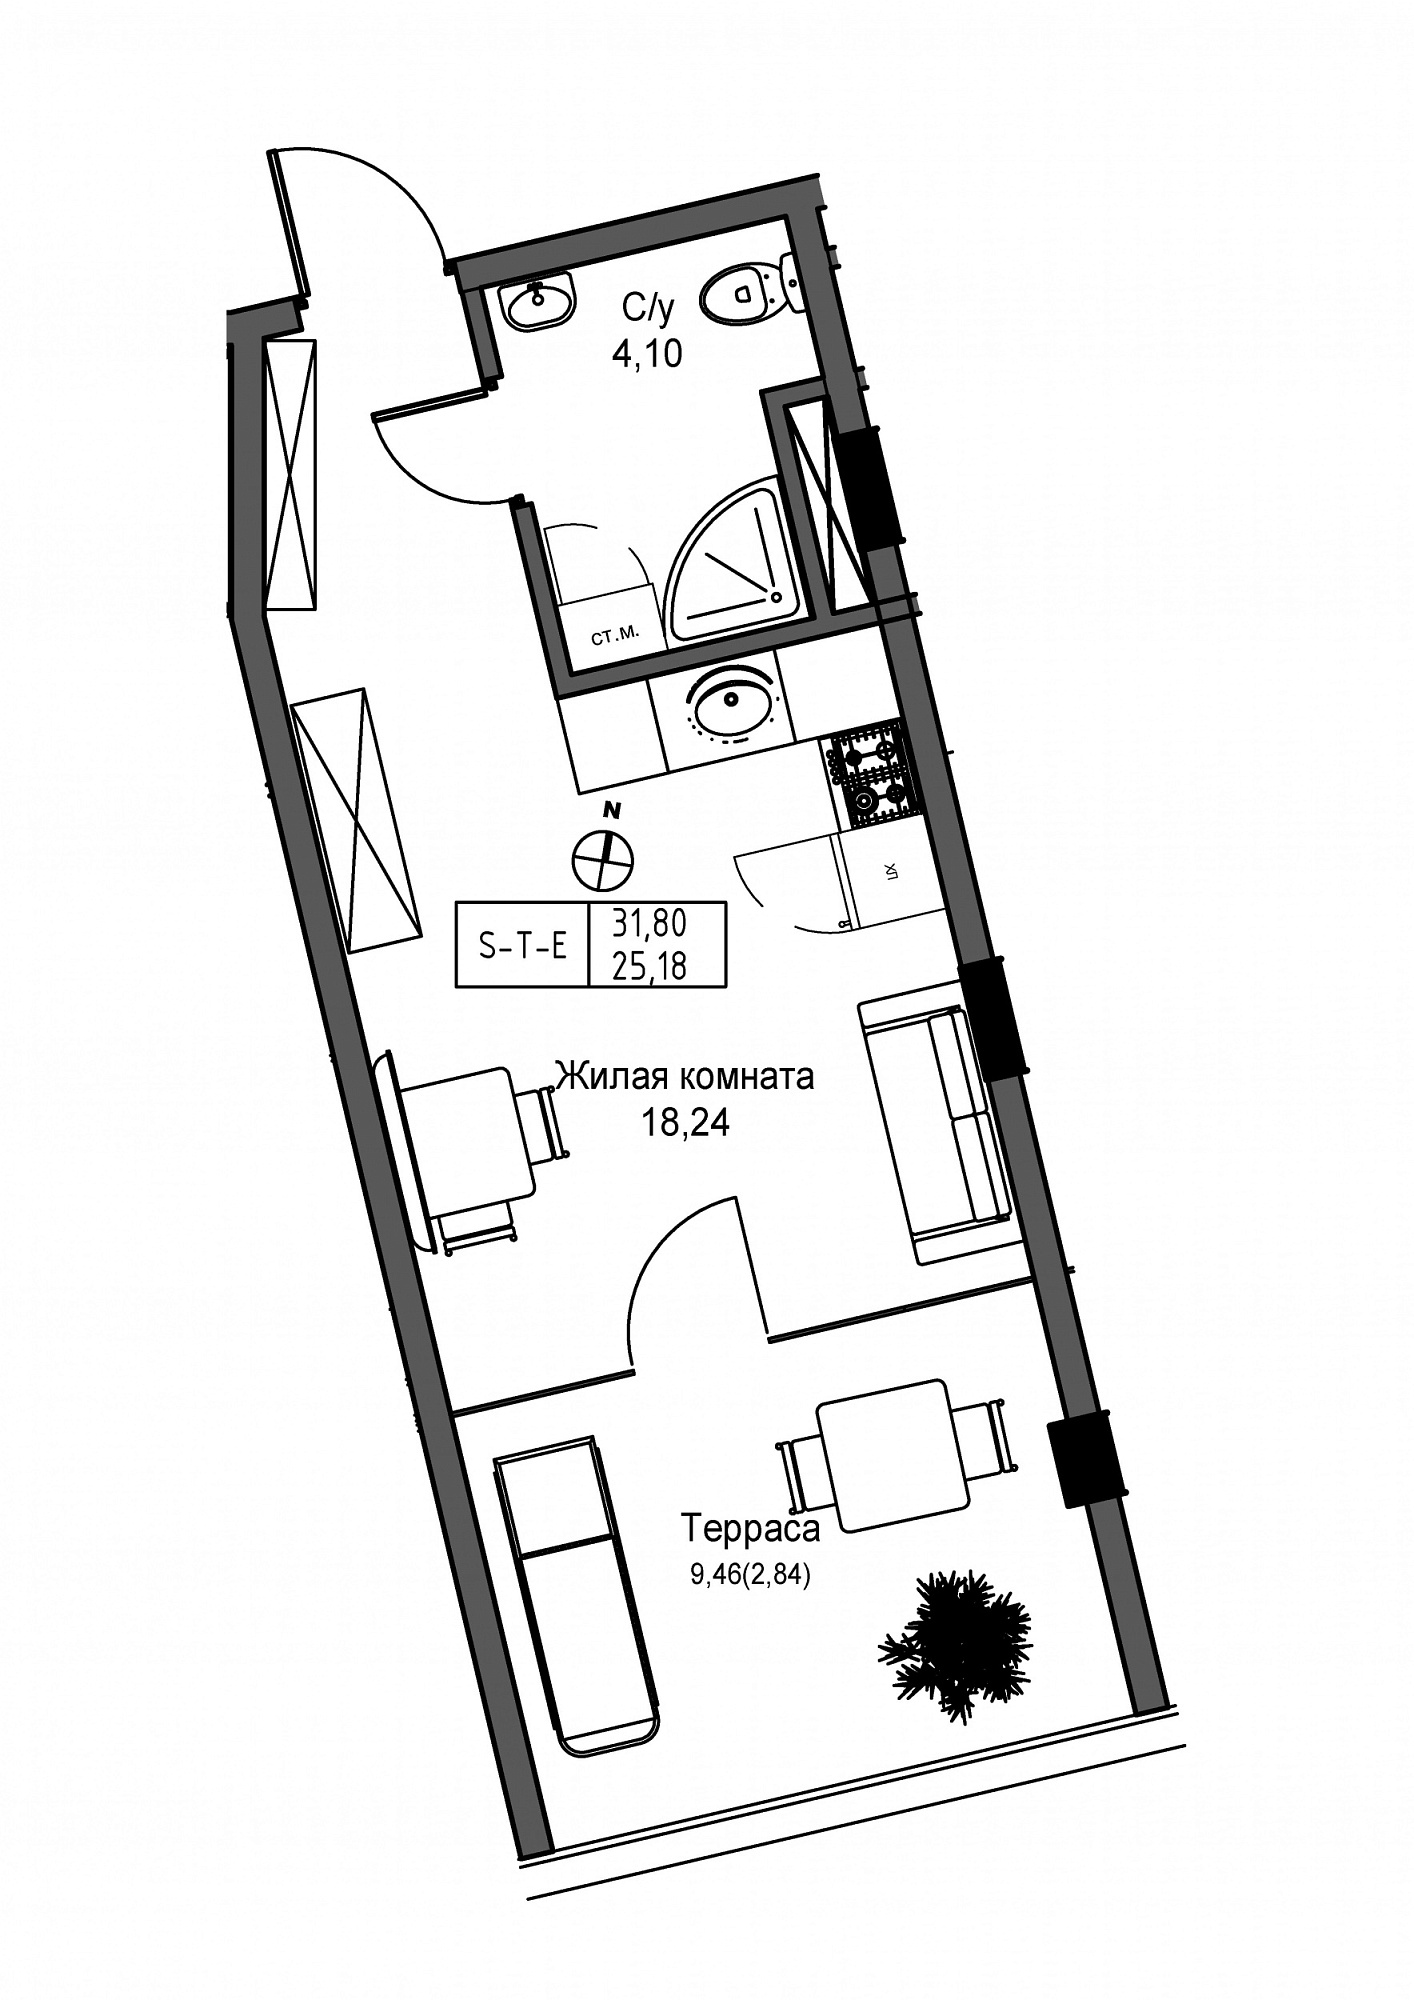 Планировка Smart-квартира площей 25.18м2, UM-004-03/0014.